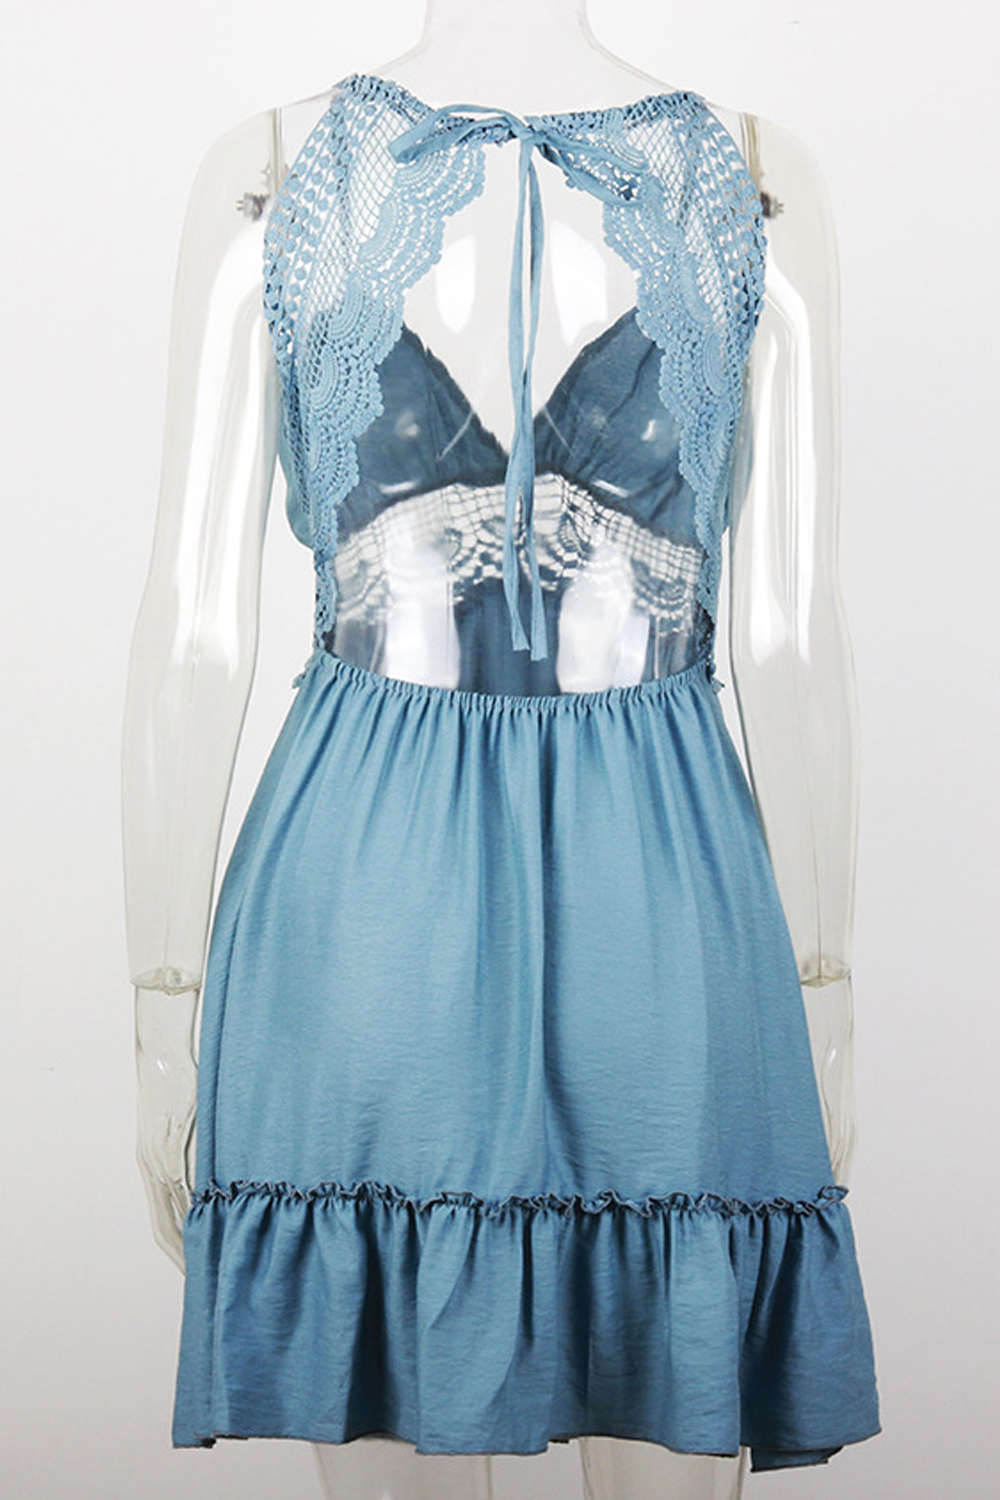 Iyasson Sleeveless Backless Lace Swing Mini Dress